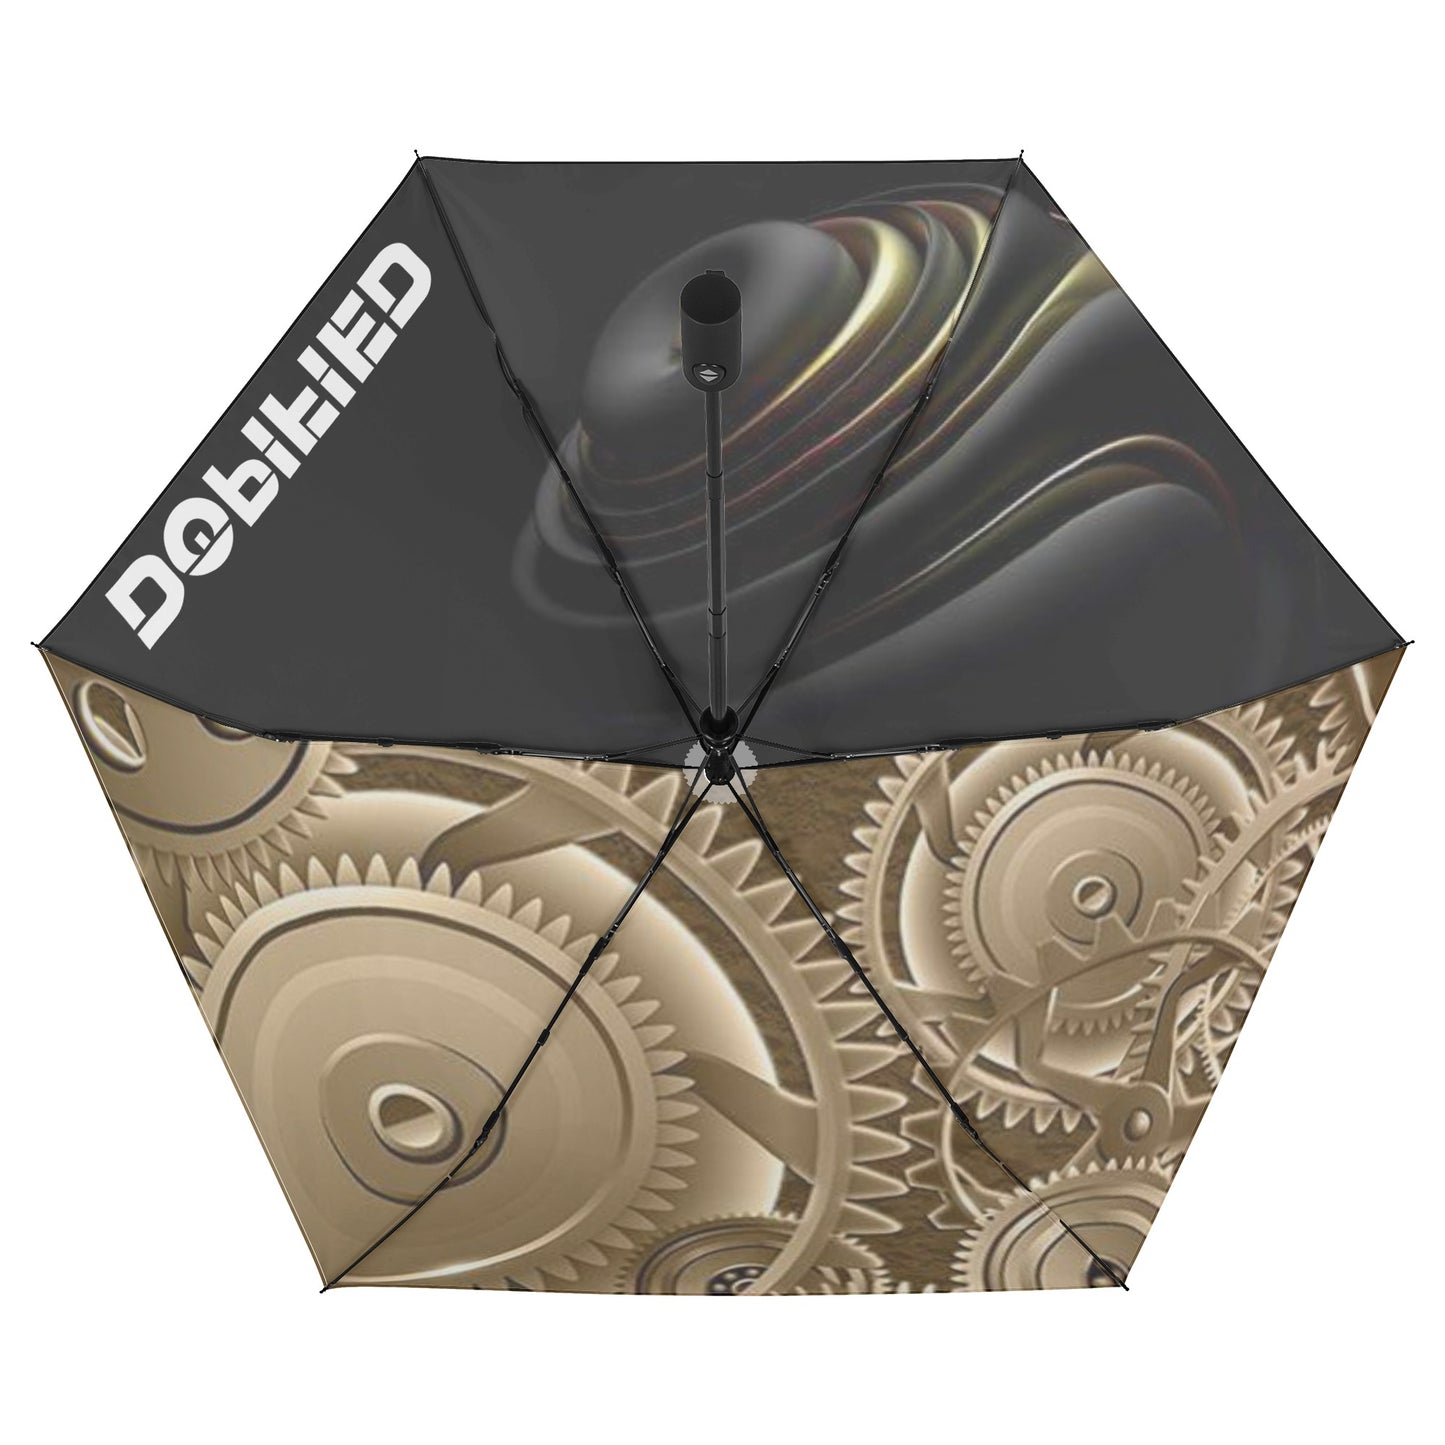 DOPiFiED Lightweight Auto Open & Close Gadget Umbrella